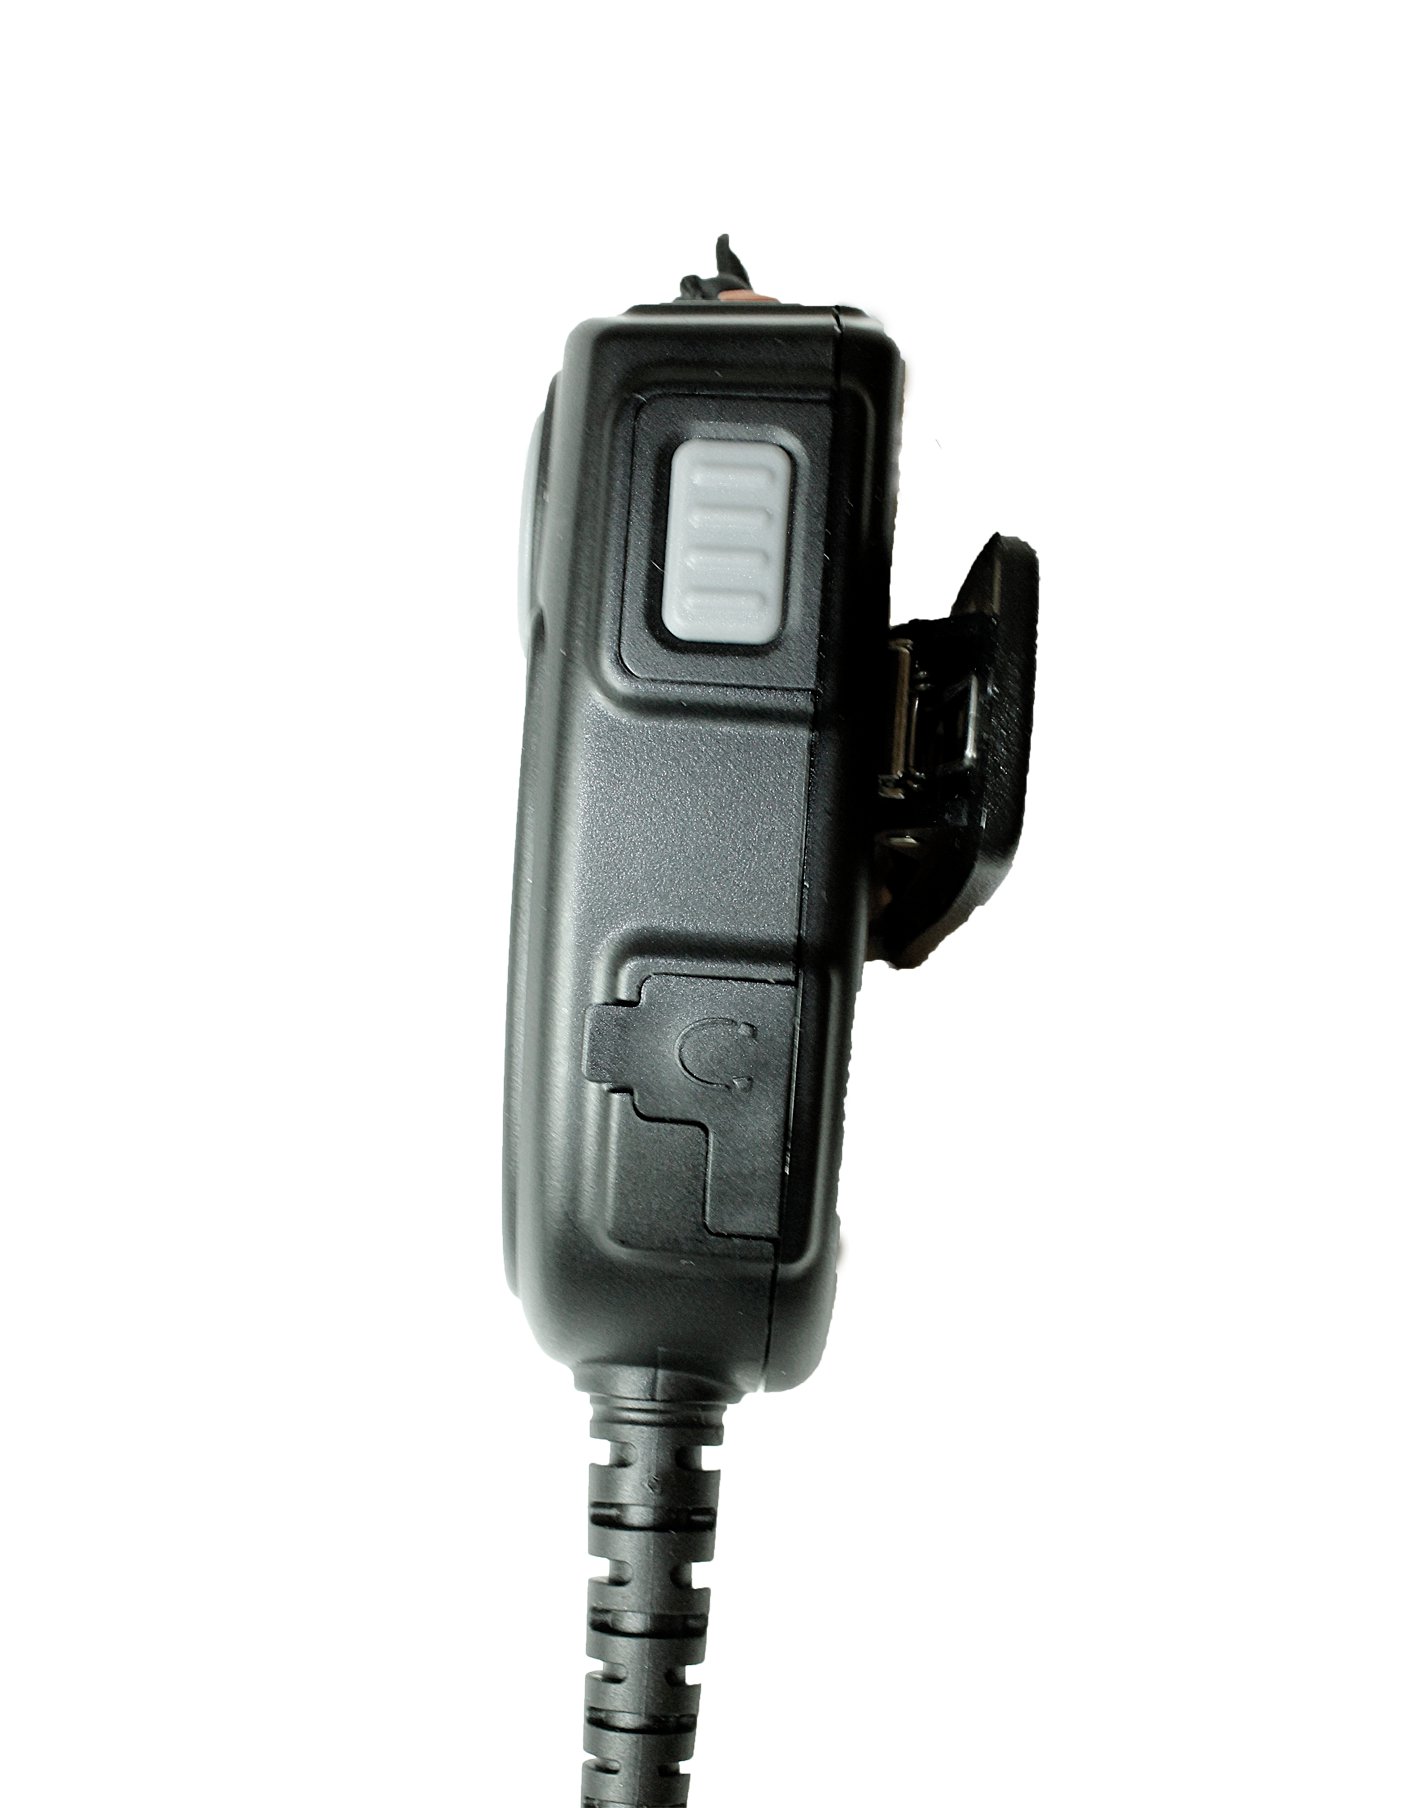 TITAN Lautsprechermikrofon MM20 mit Nexus 02 passend für Sepura STP8000, STP9000, SC20